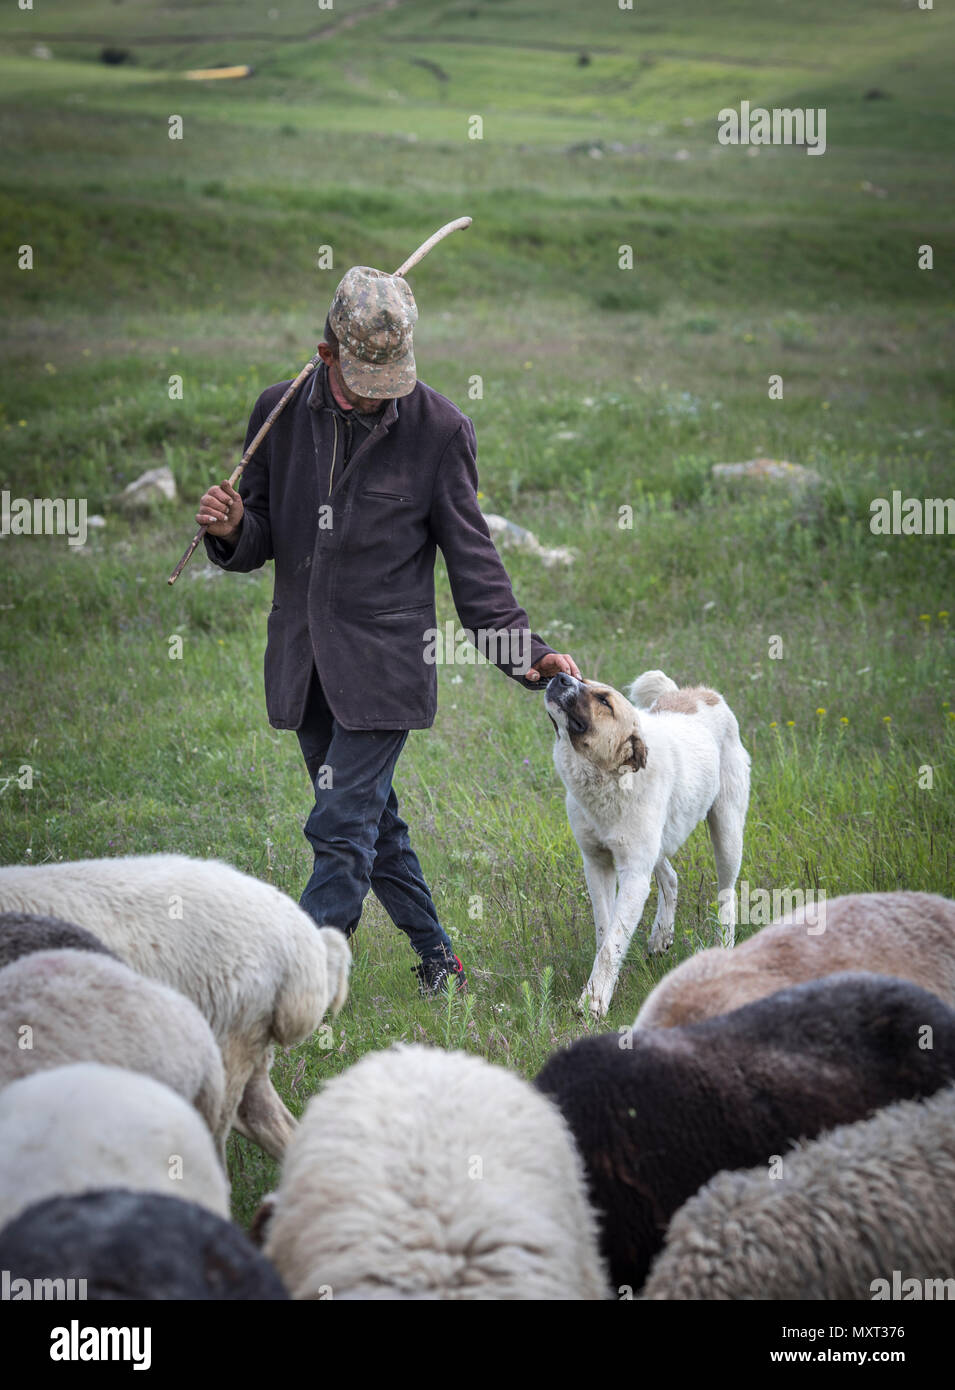 Areni, Armenien, 2. Juni, 2018: armenische Mann hütete die Schafe in einer Landschaft Stockfoto